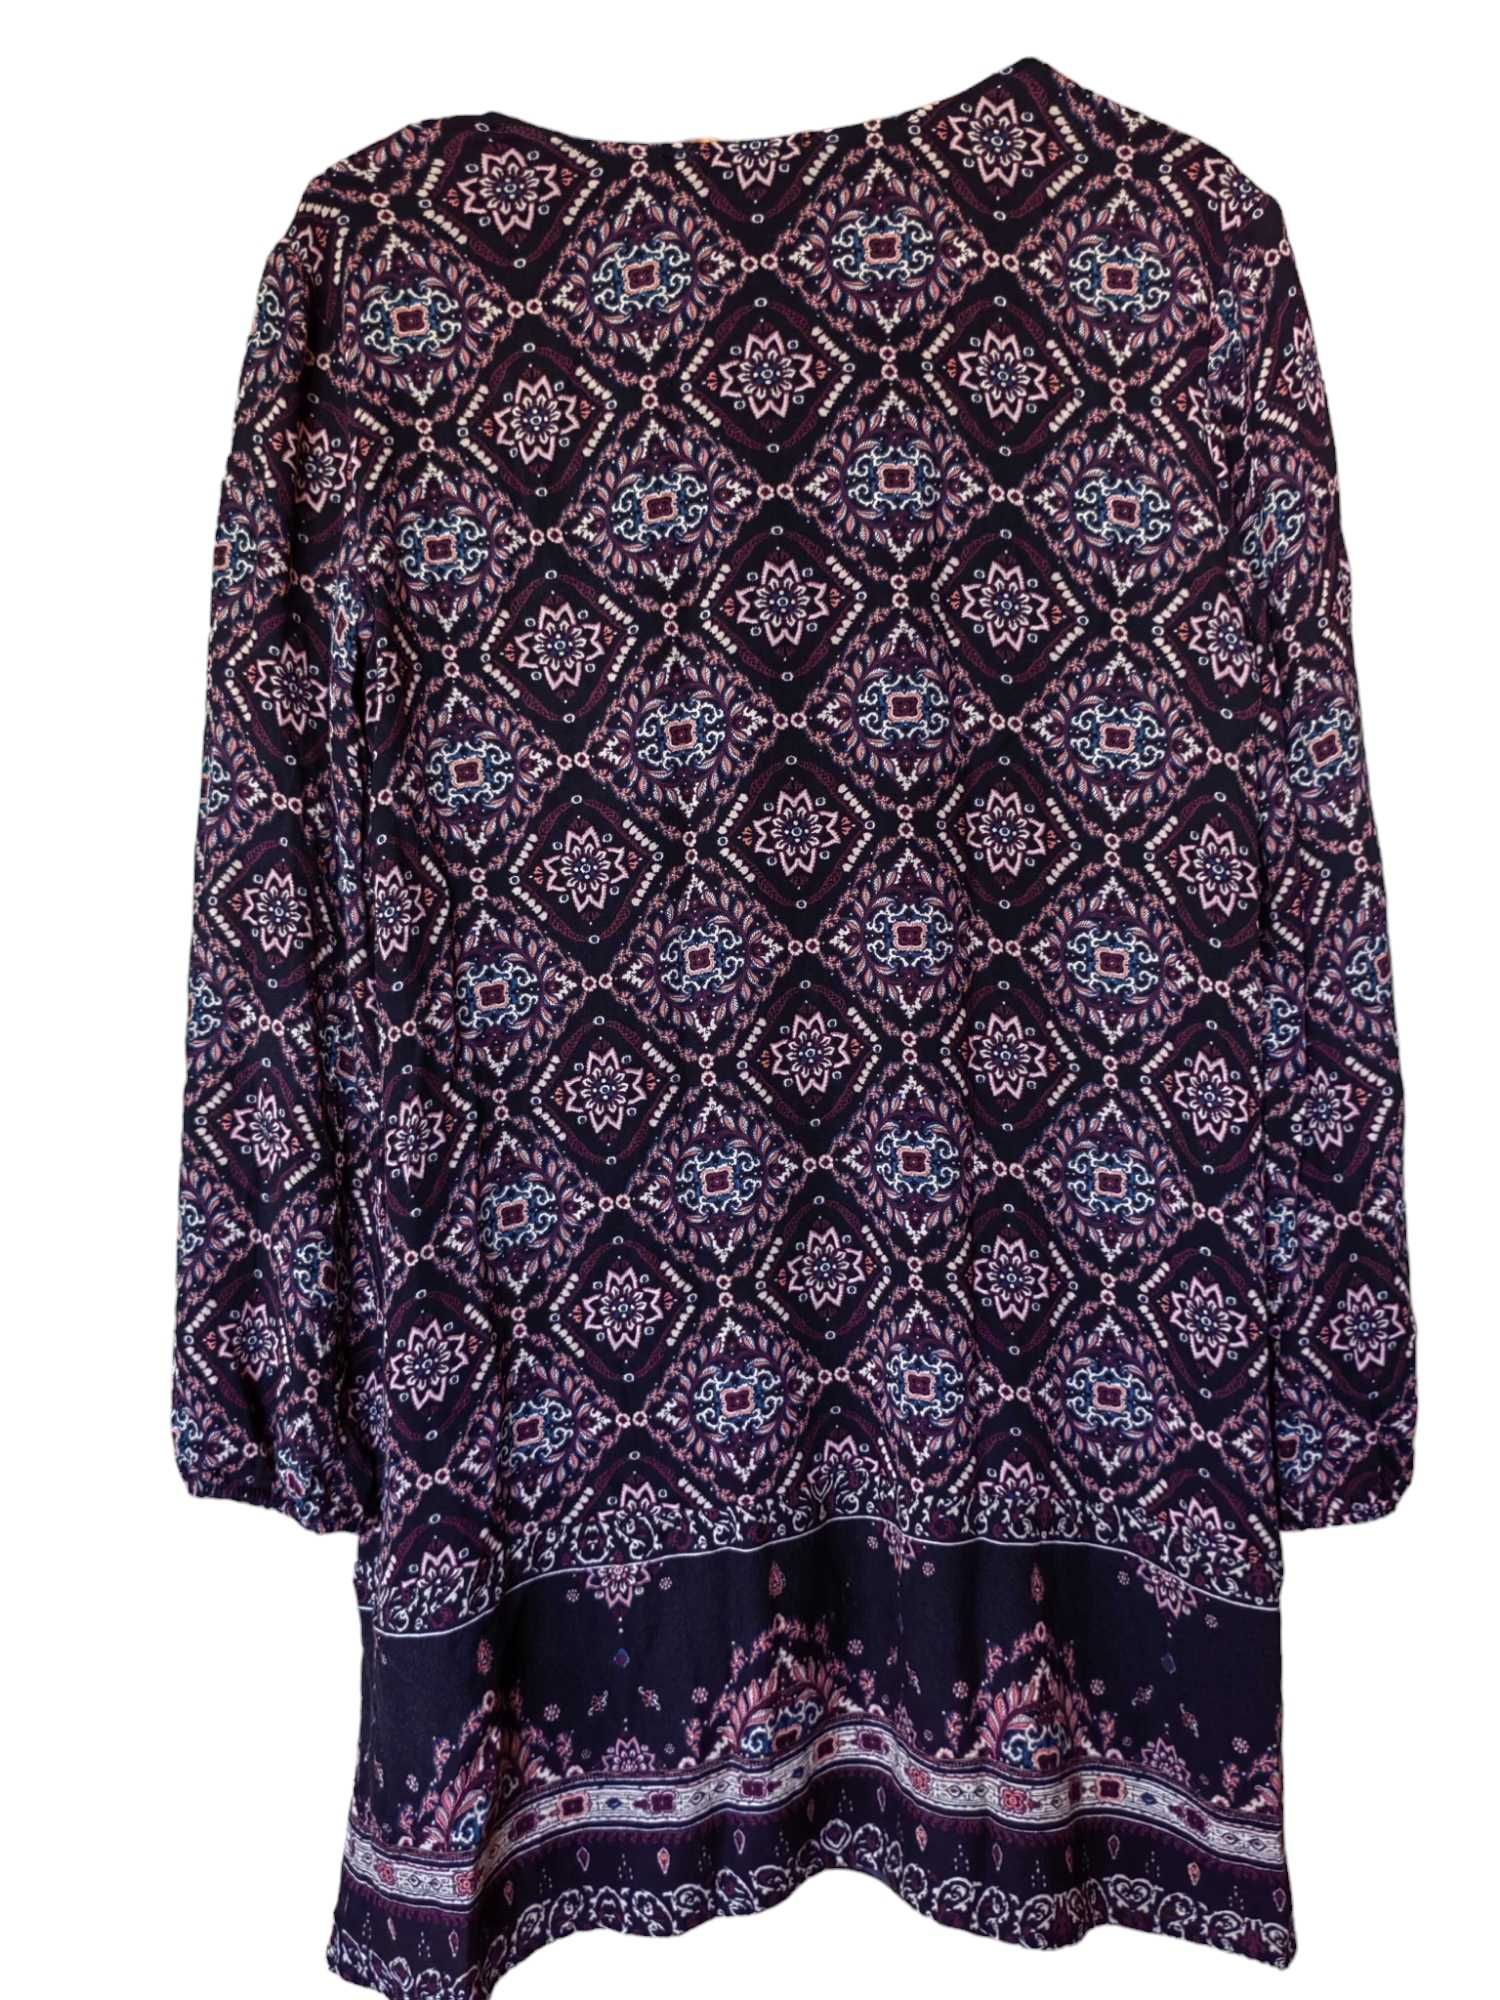 Дамска блуза с подплата и абстрактна щампа Bershka, 77х49 см, M